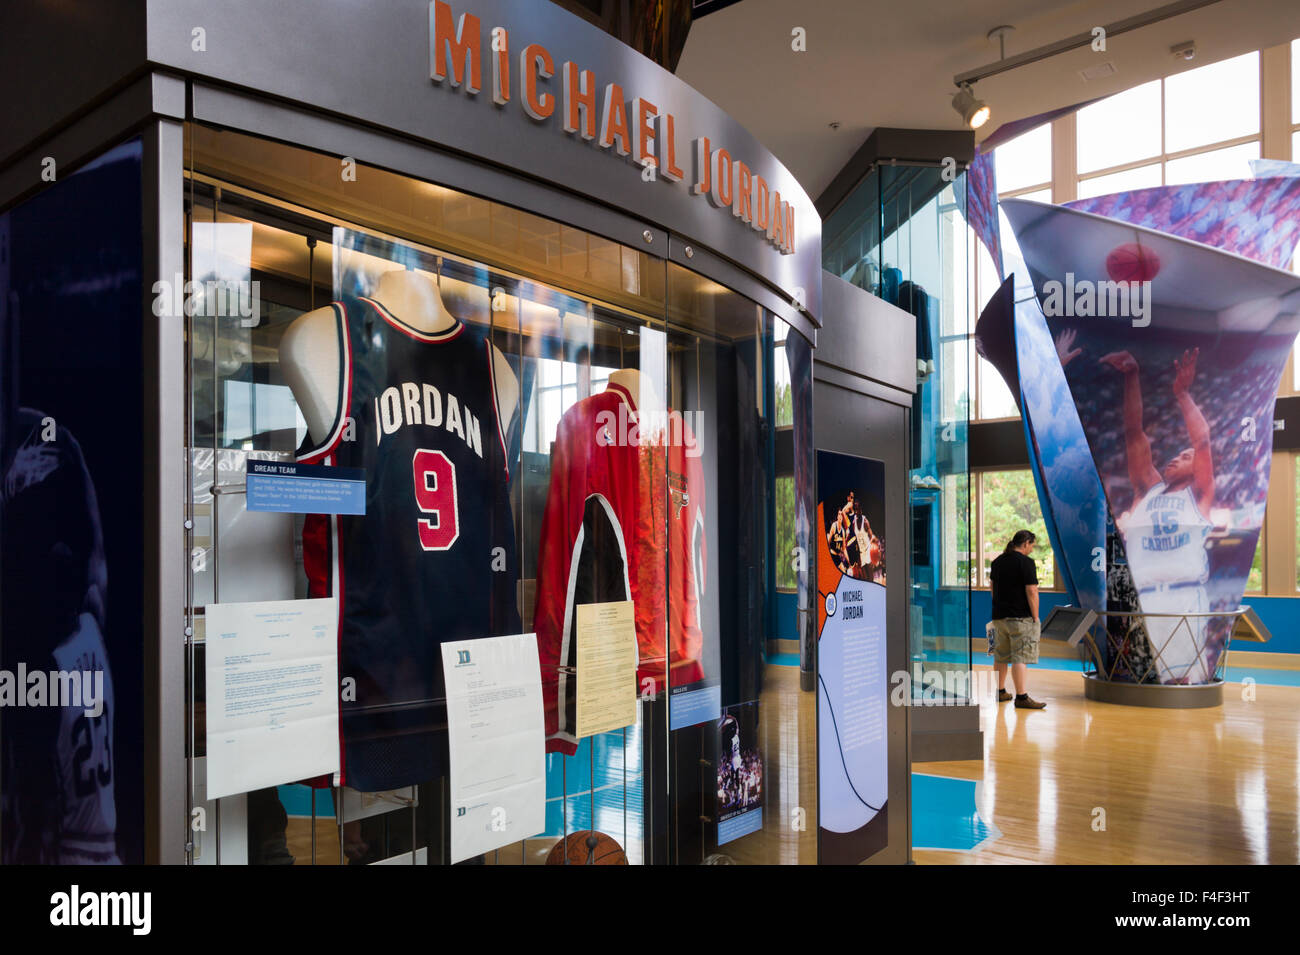 North Carolina, Chapel Hill, University of North Carolina à Chapel Hill, Caroline du Nord Basket-ball Museum, musée de l'équipe de l'UNC Tar Heels, affichage de la légende du sport Michael Jordan numéro 9 Banque D'Images